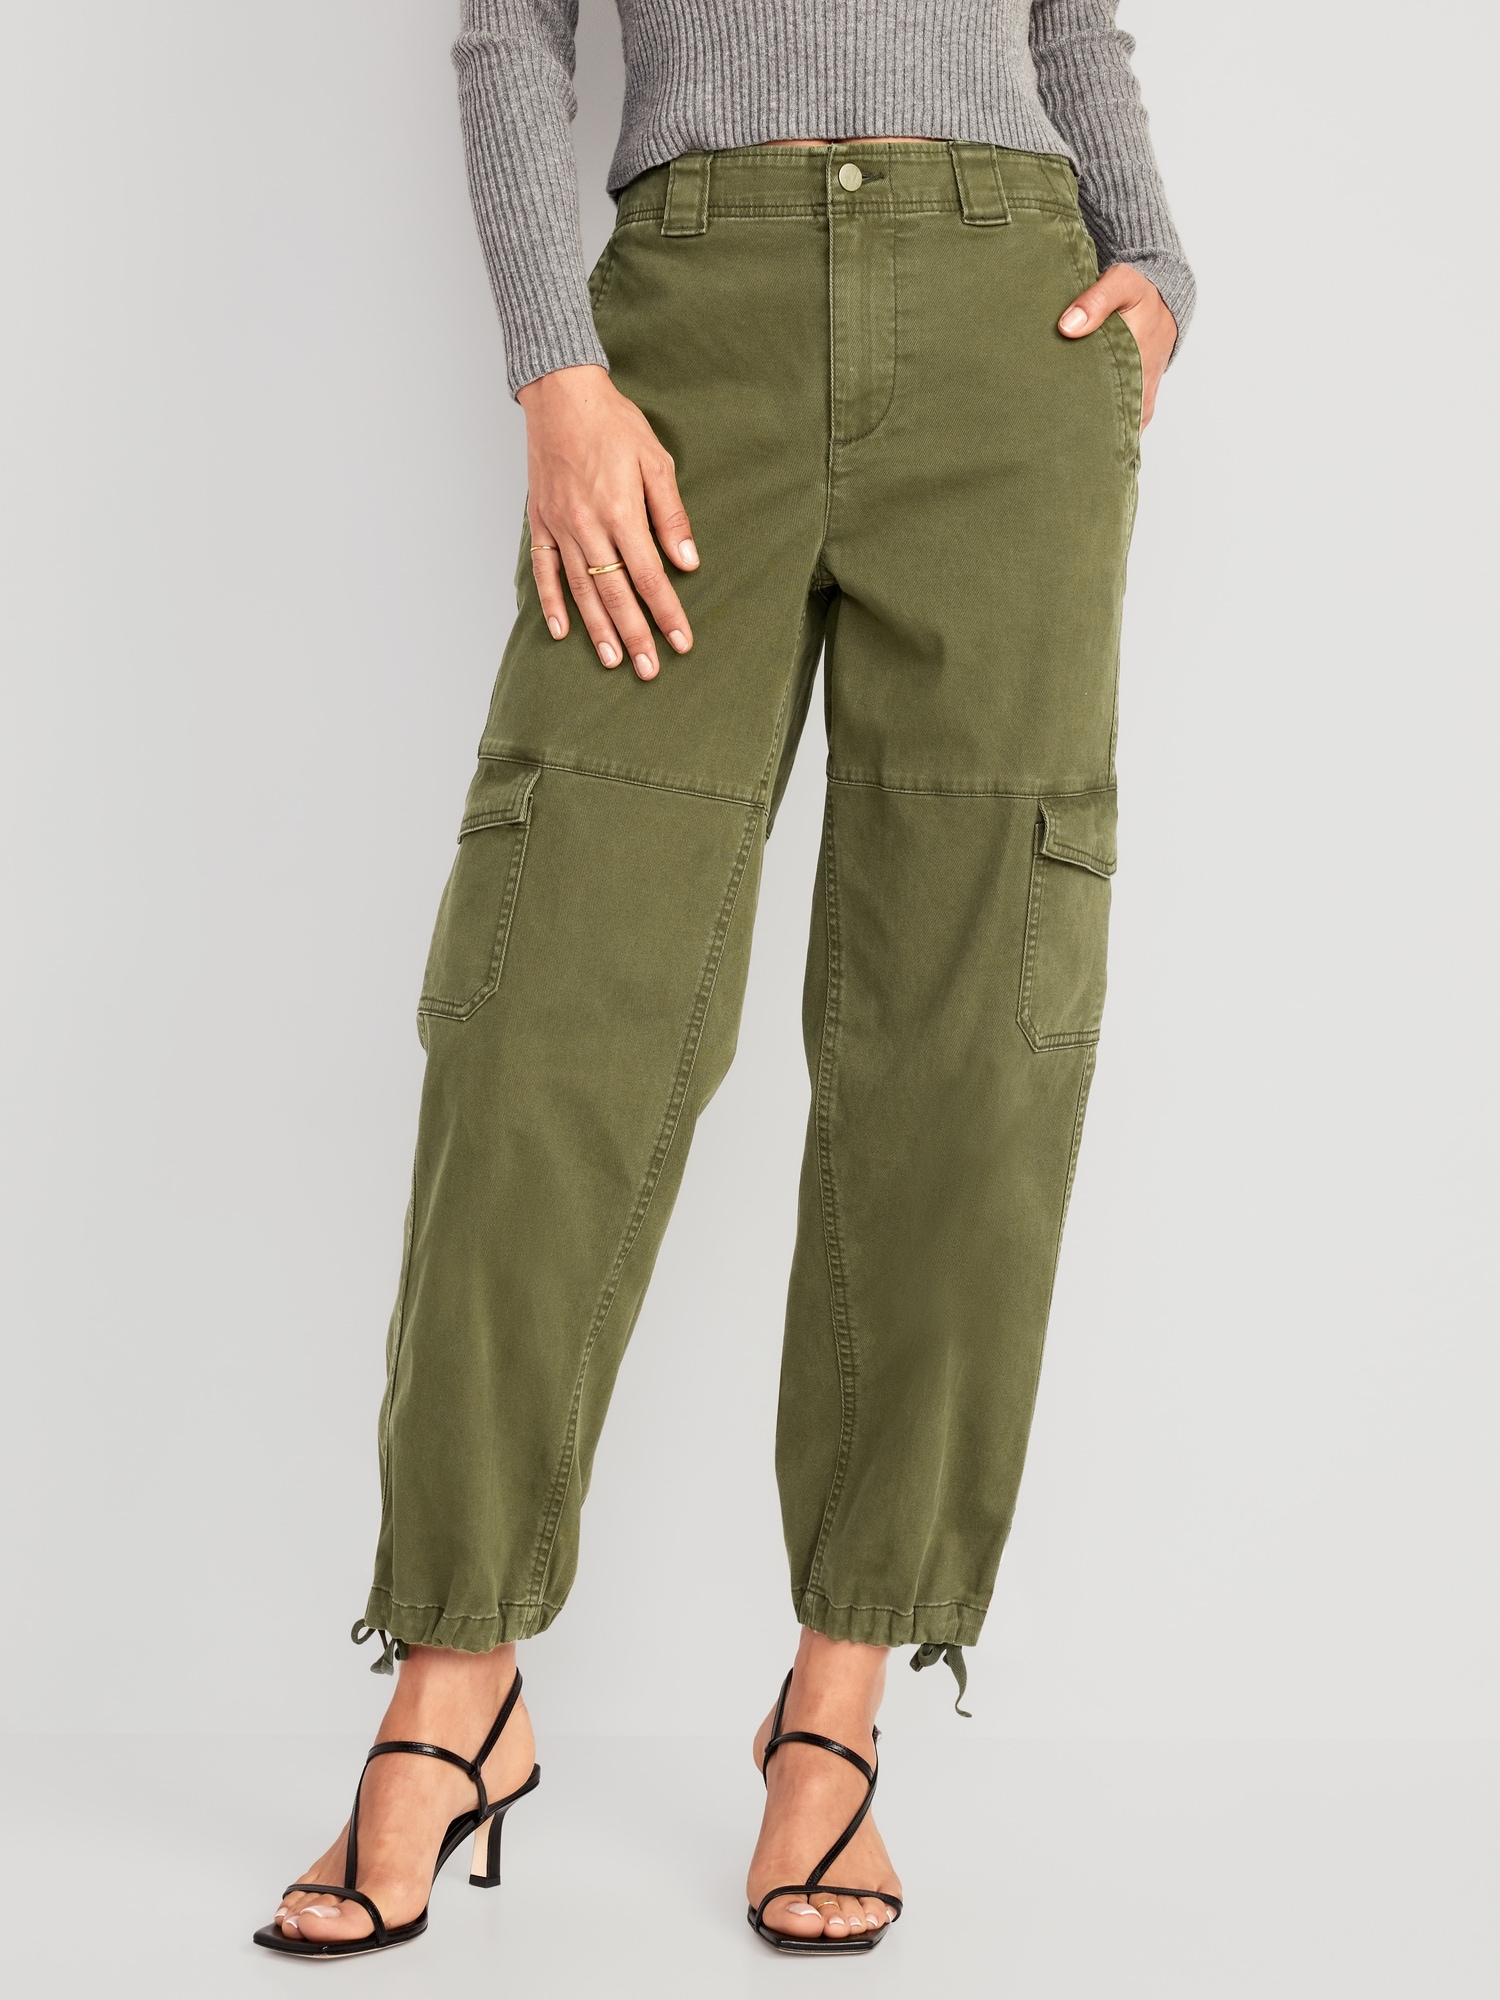 Abercrombie & Fitch Khaki Bootcut Back Flap Pocket Button Pants Women  10S | eBay